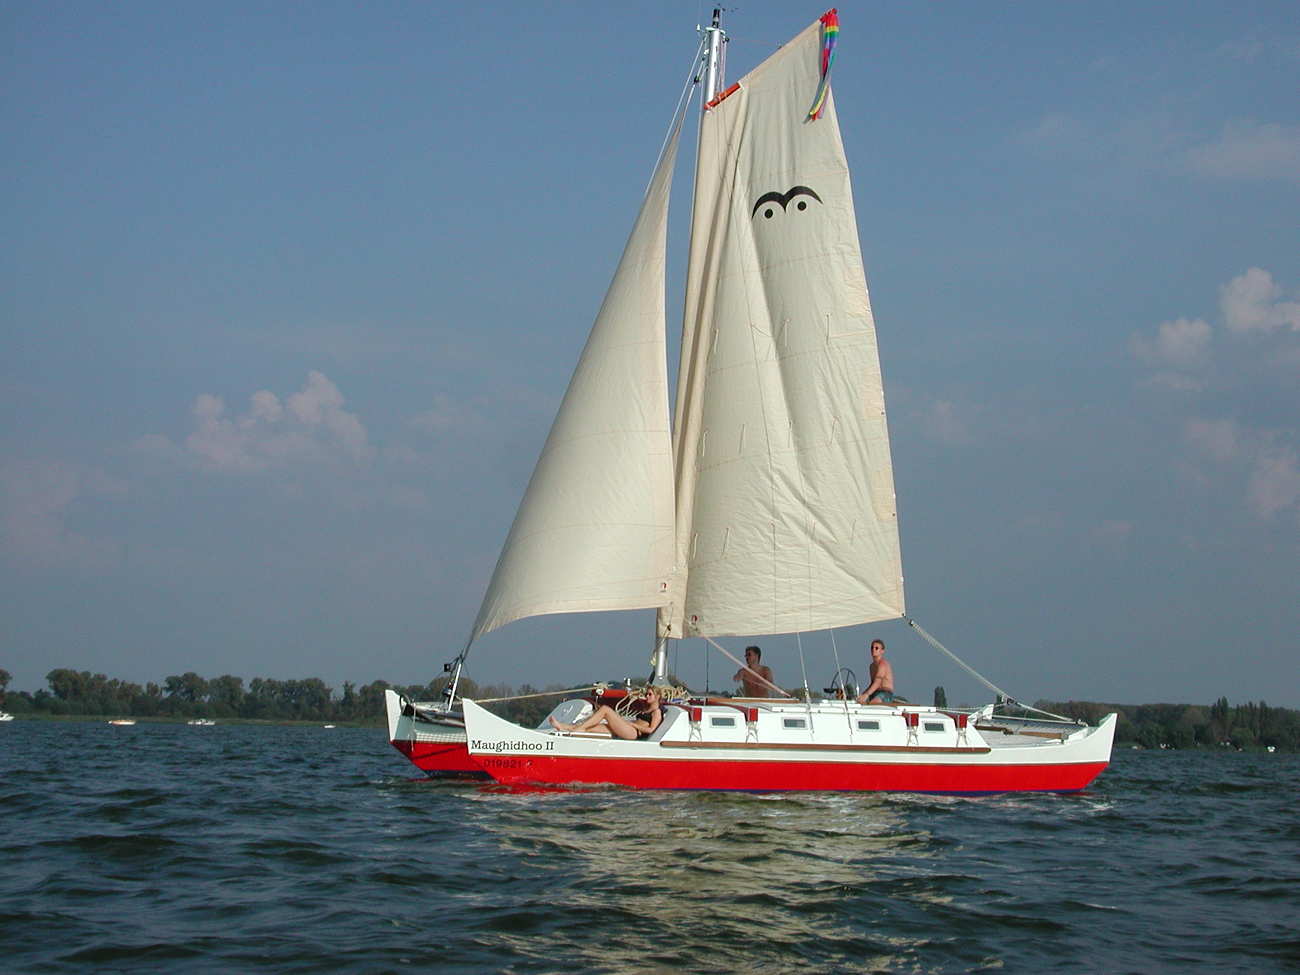 Pahi 31 sailing, three people on deck